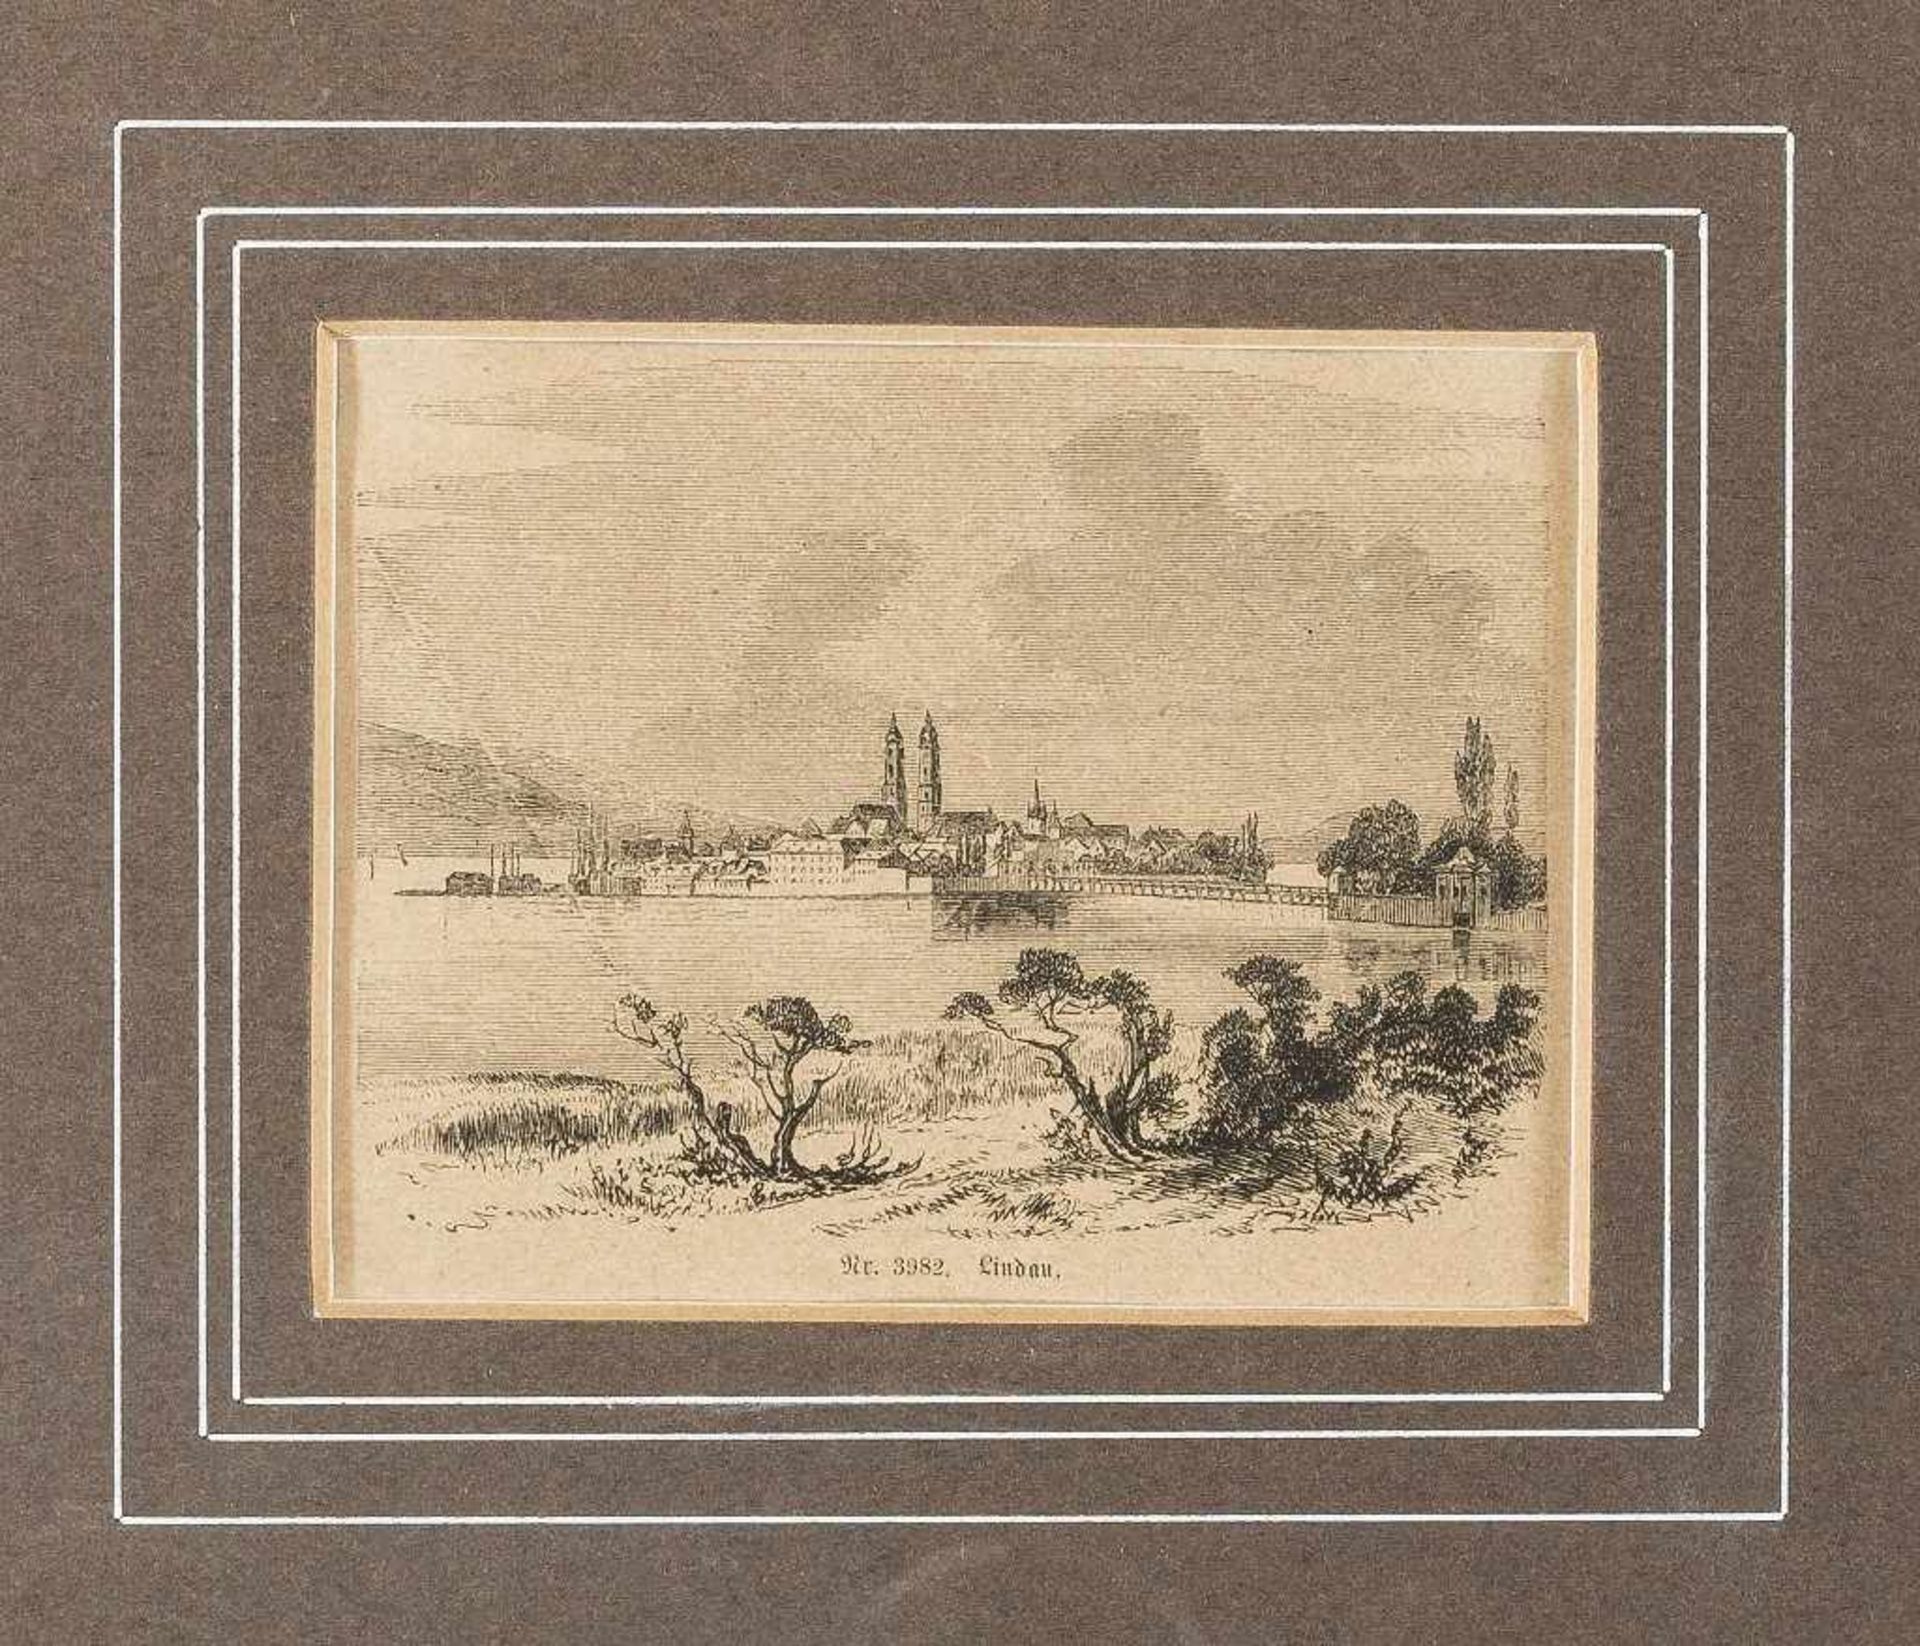 Lindau. Blick vom Toscana-Ufer über die Brücke auf die Insel. Holzstich, Ende 19. Jh. Bildgr. 8 x